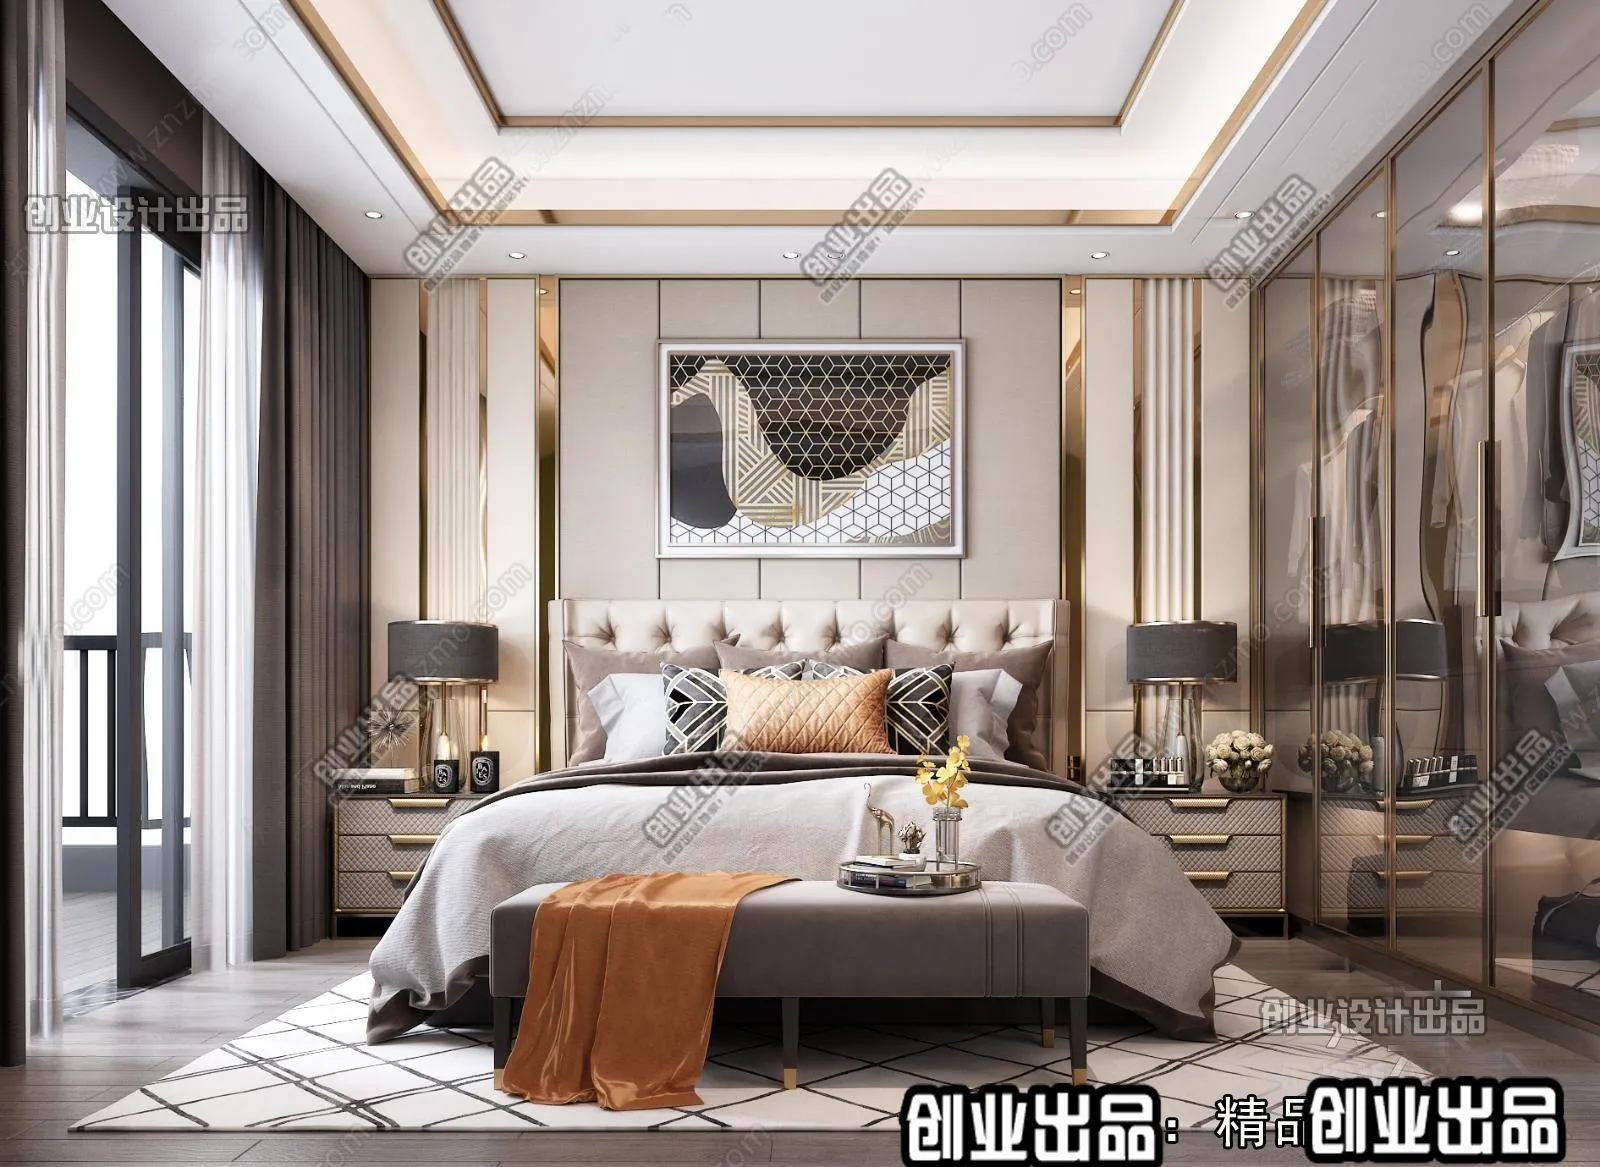 Bedroom – Modern Design – 3D66 – 3D Scenes – 021